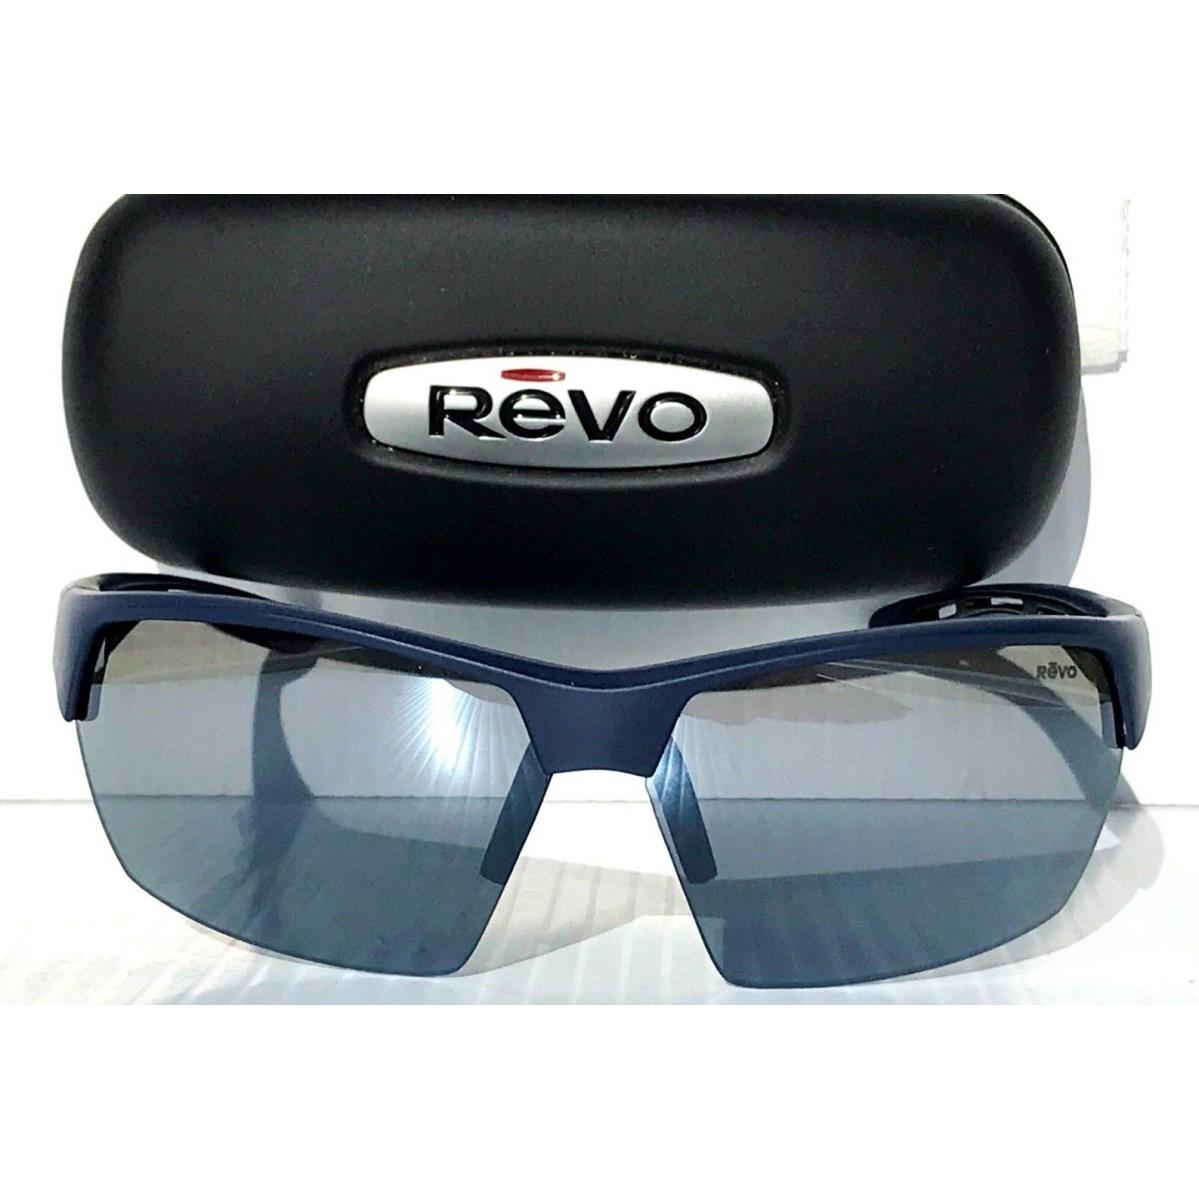 Revo sunglasses JETT - Navy Frame, Gray Lens 0